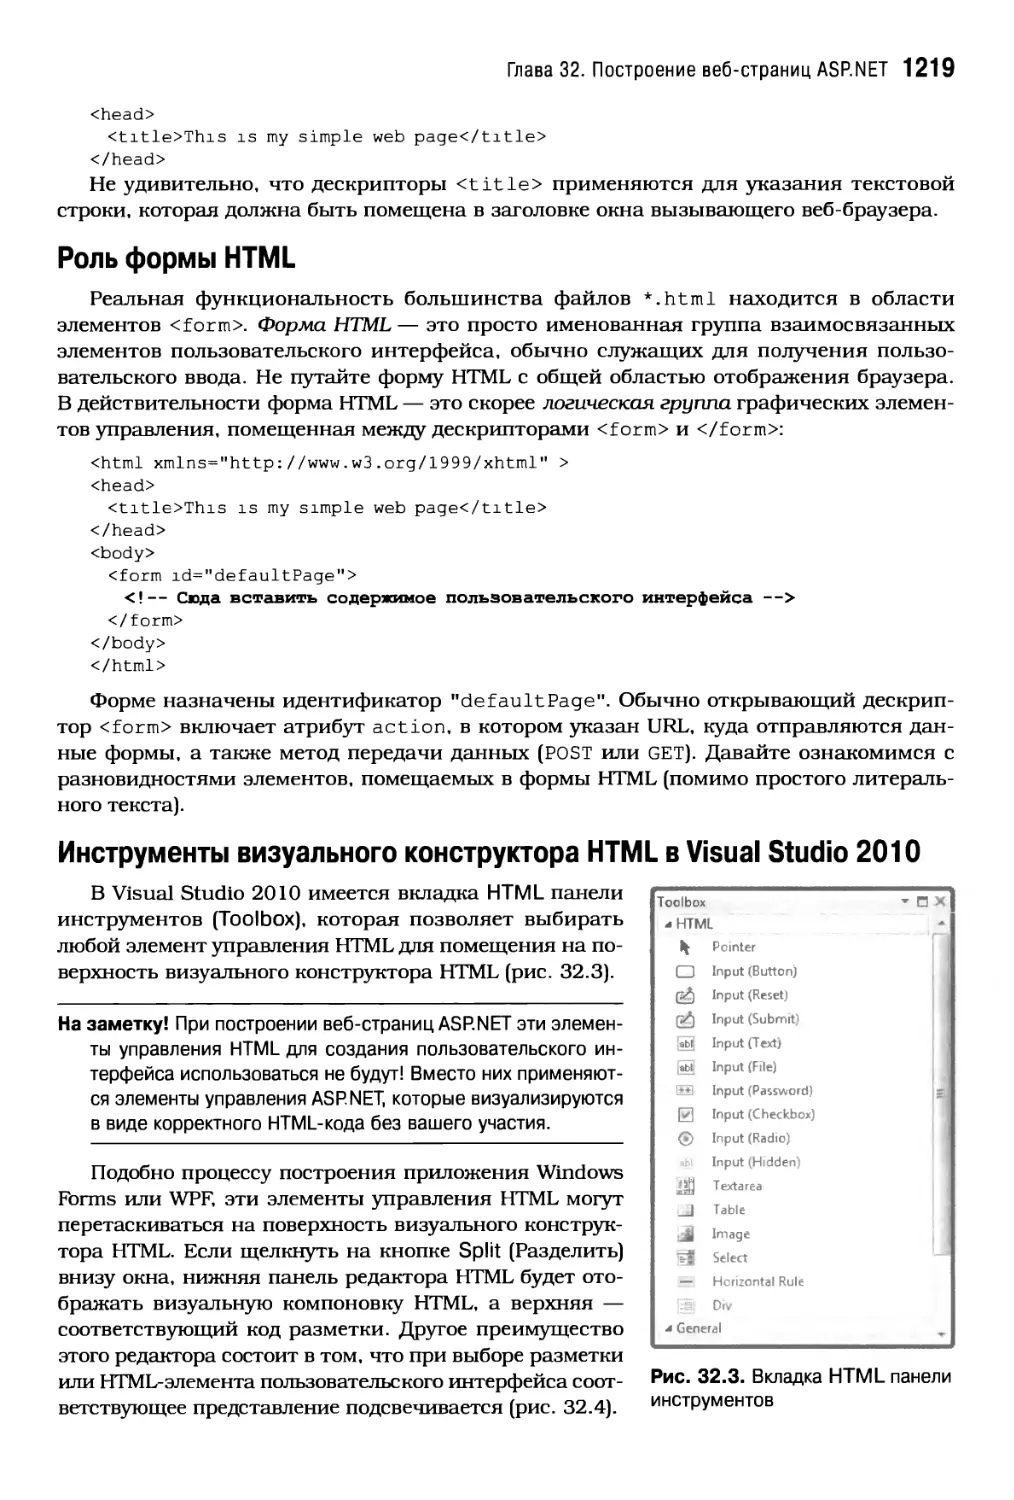 Роль формы HTML
Инструменты визуального конструктора HTML в Visual Studio 2010